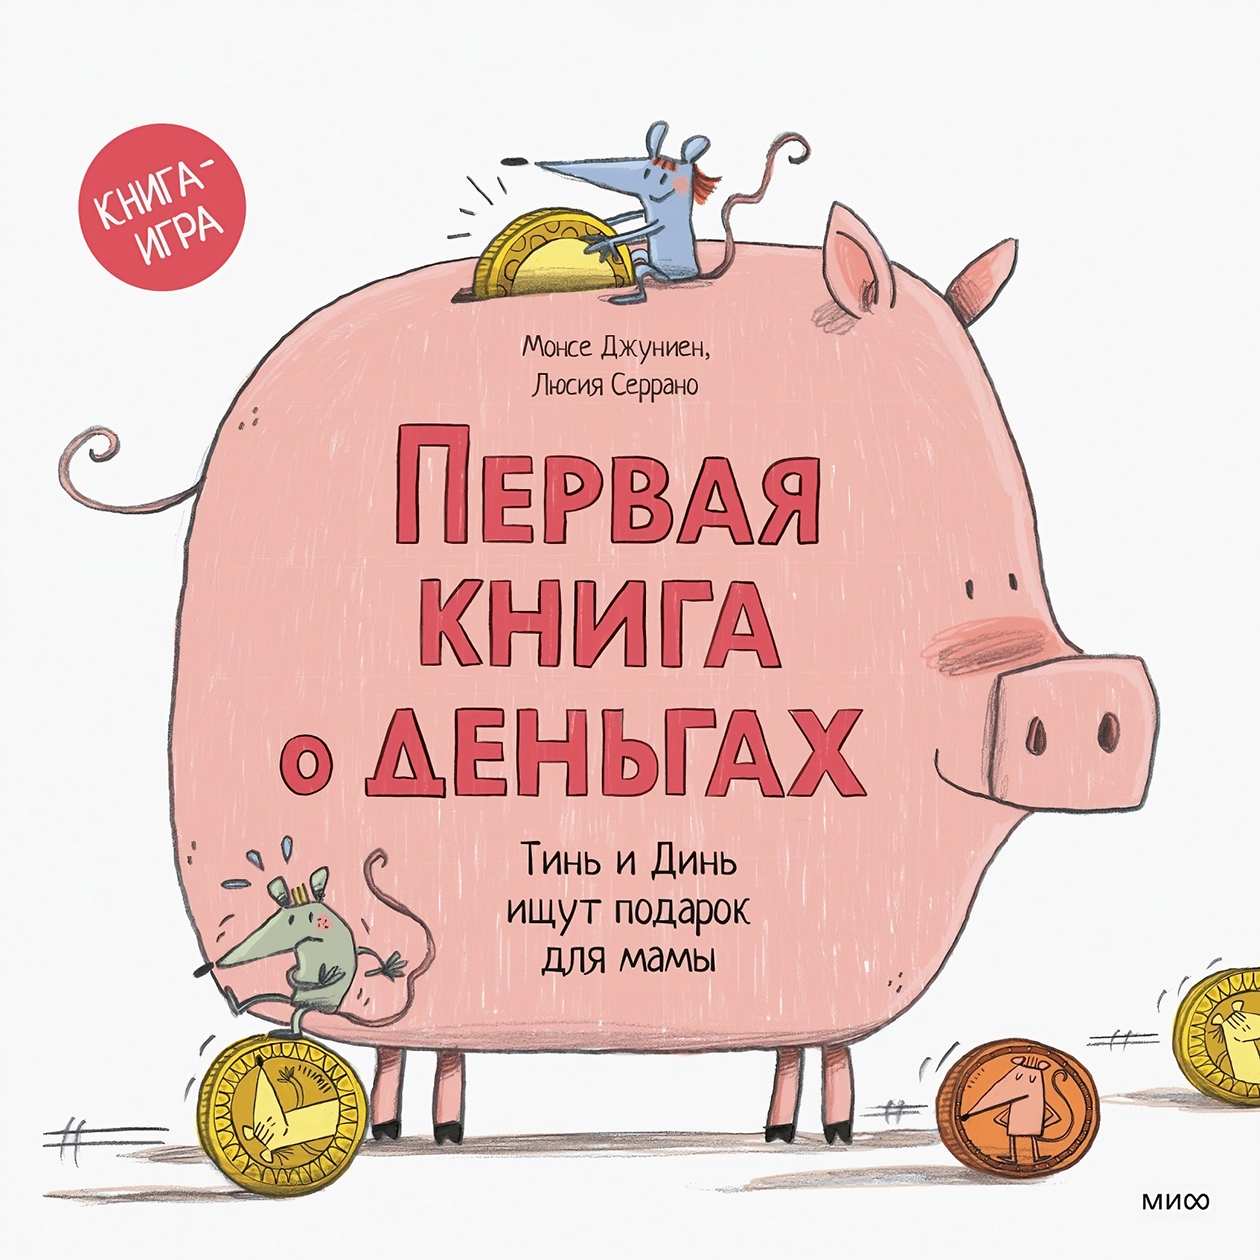 В прошлом году купили эту книгу на ярмарке, сыну очень нравится. Она интерактивная: можно вставлять карточку в банкомат или собрать вот такую свинью-копилку из картона. Источник: mann-ivanov-ferber.ru